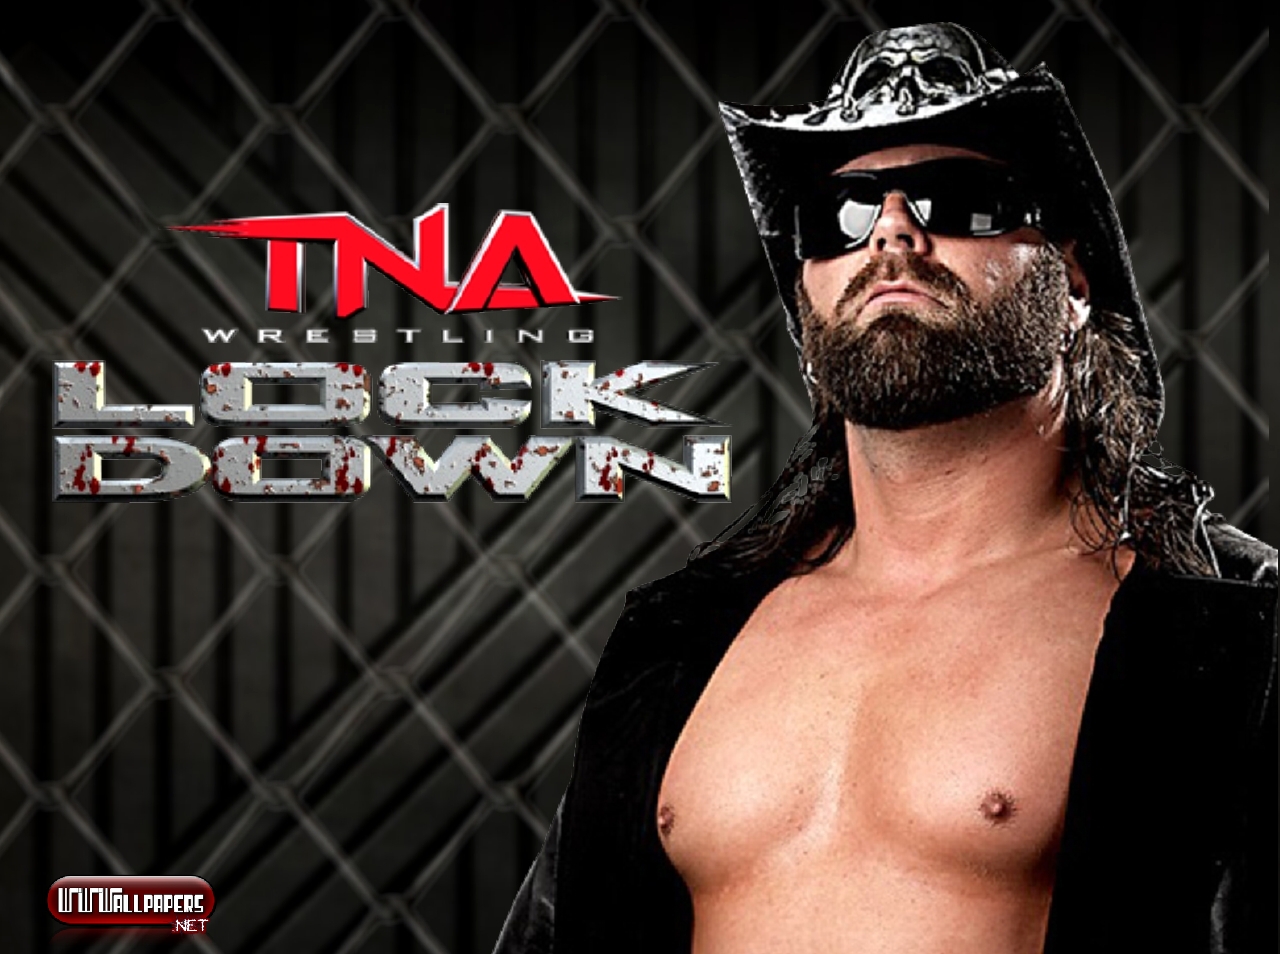 Wwe на русском языке 545. WWE на русском. TNA 1/2. TNA дискография. Реслинг от 545 ТВ.